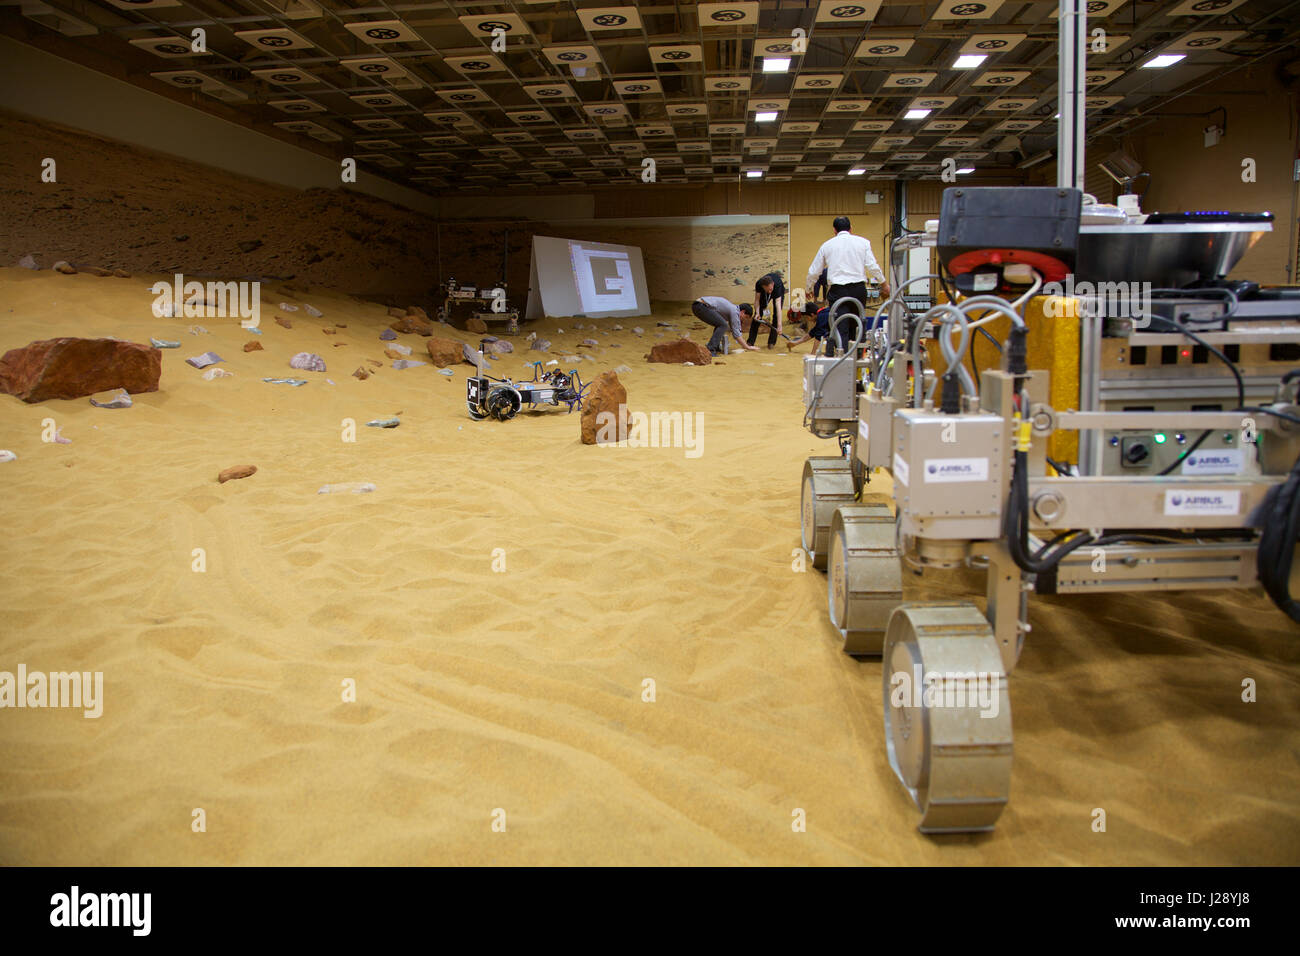 Un pequeño scout prototipos para la AEE ExoMars rover misión a Marte es probado por Airbus en un depósito hecho a imagen y semejanza del Planeta Rojo Foto de stock